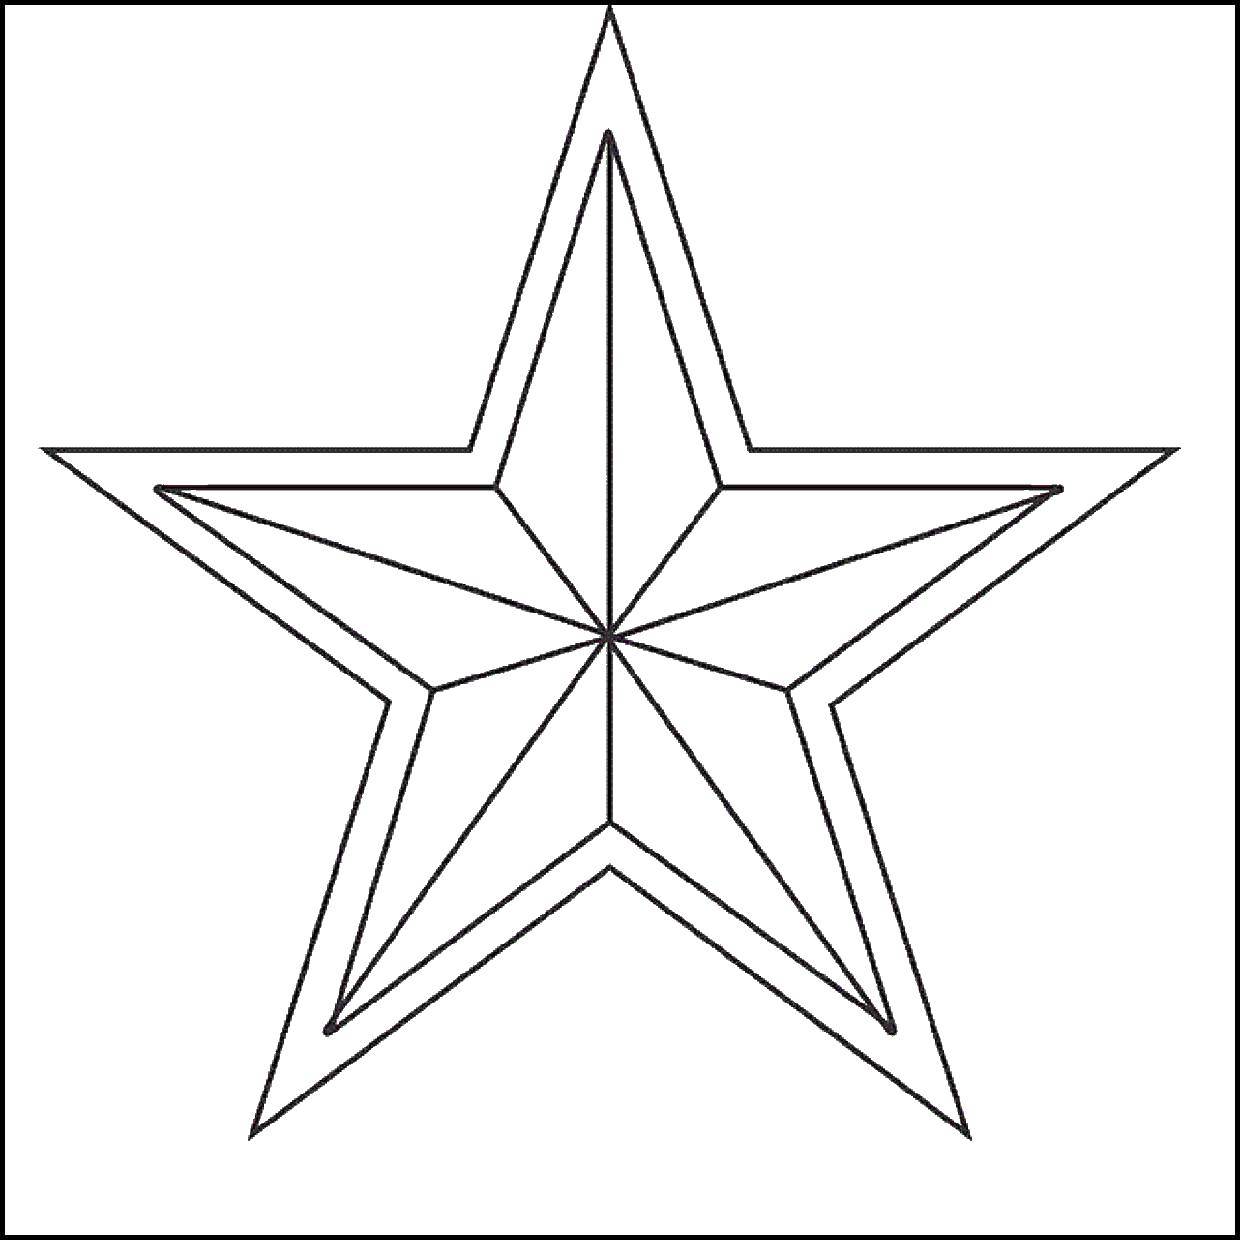 Название: Раскраска Красная звезда. Категория: Советские раскраски. Теги: советские знаки, военное, звезда, СССР.